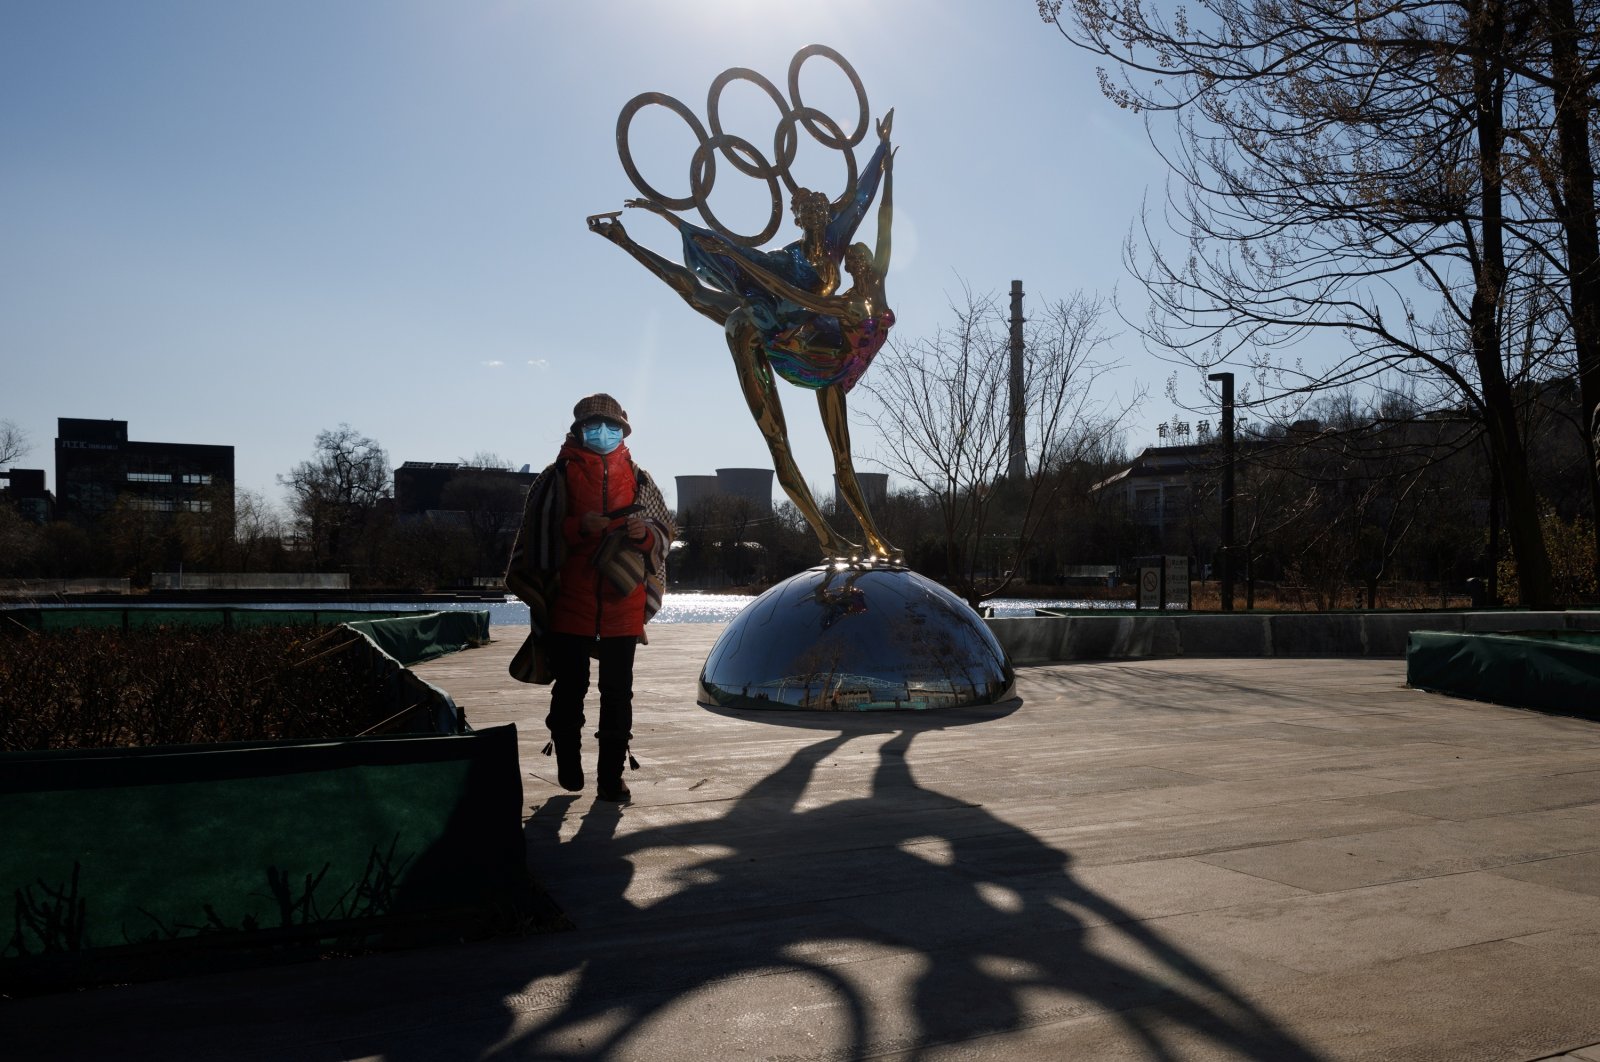 Omicron muncul sebagai keprihatinan bagi penyelenggara Olimpiade Musim Dingin Beijing